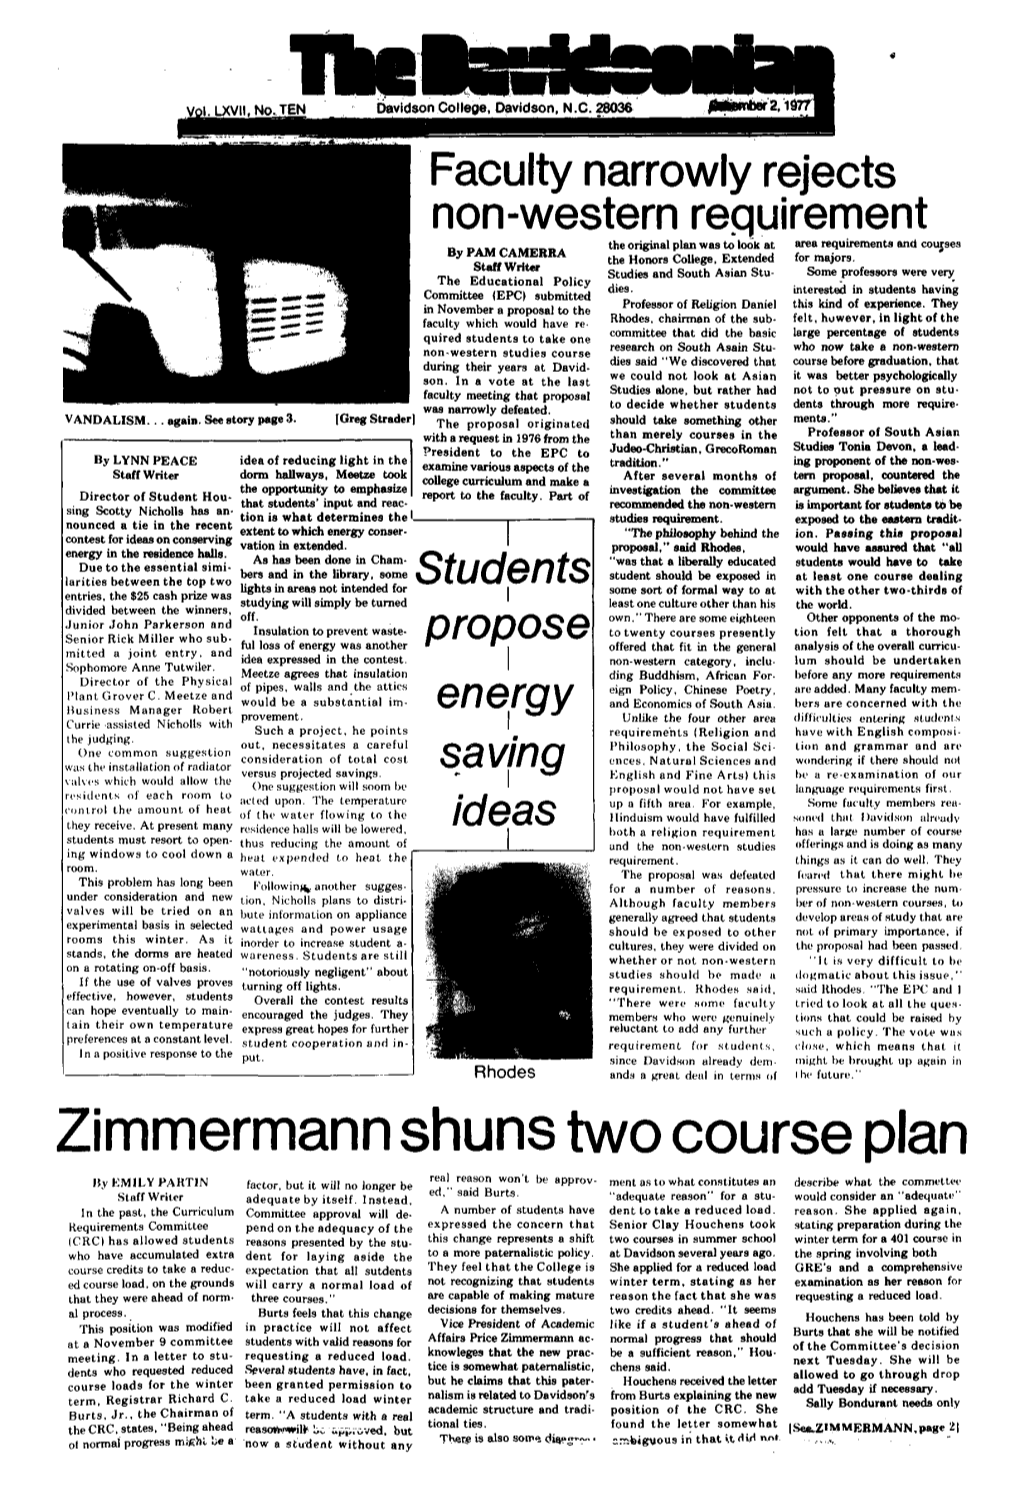 Zimmermann Shuns Two Course Plan